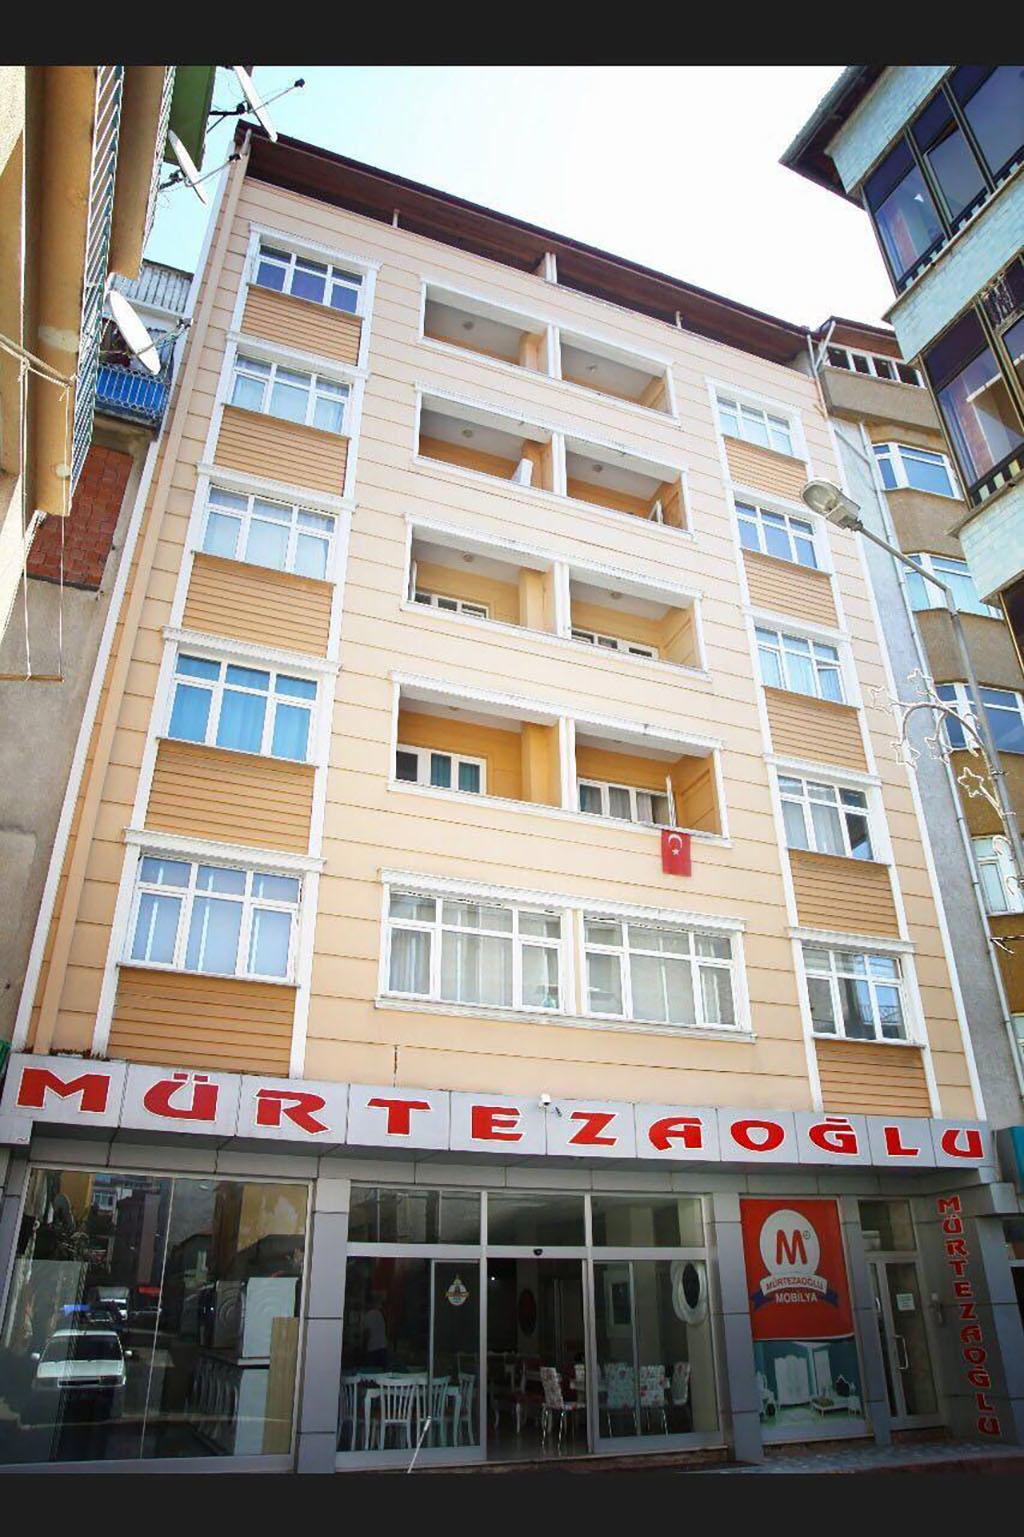 Murtezaoglu Apartments